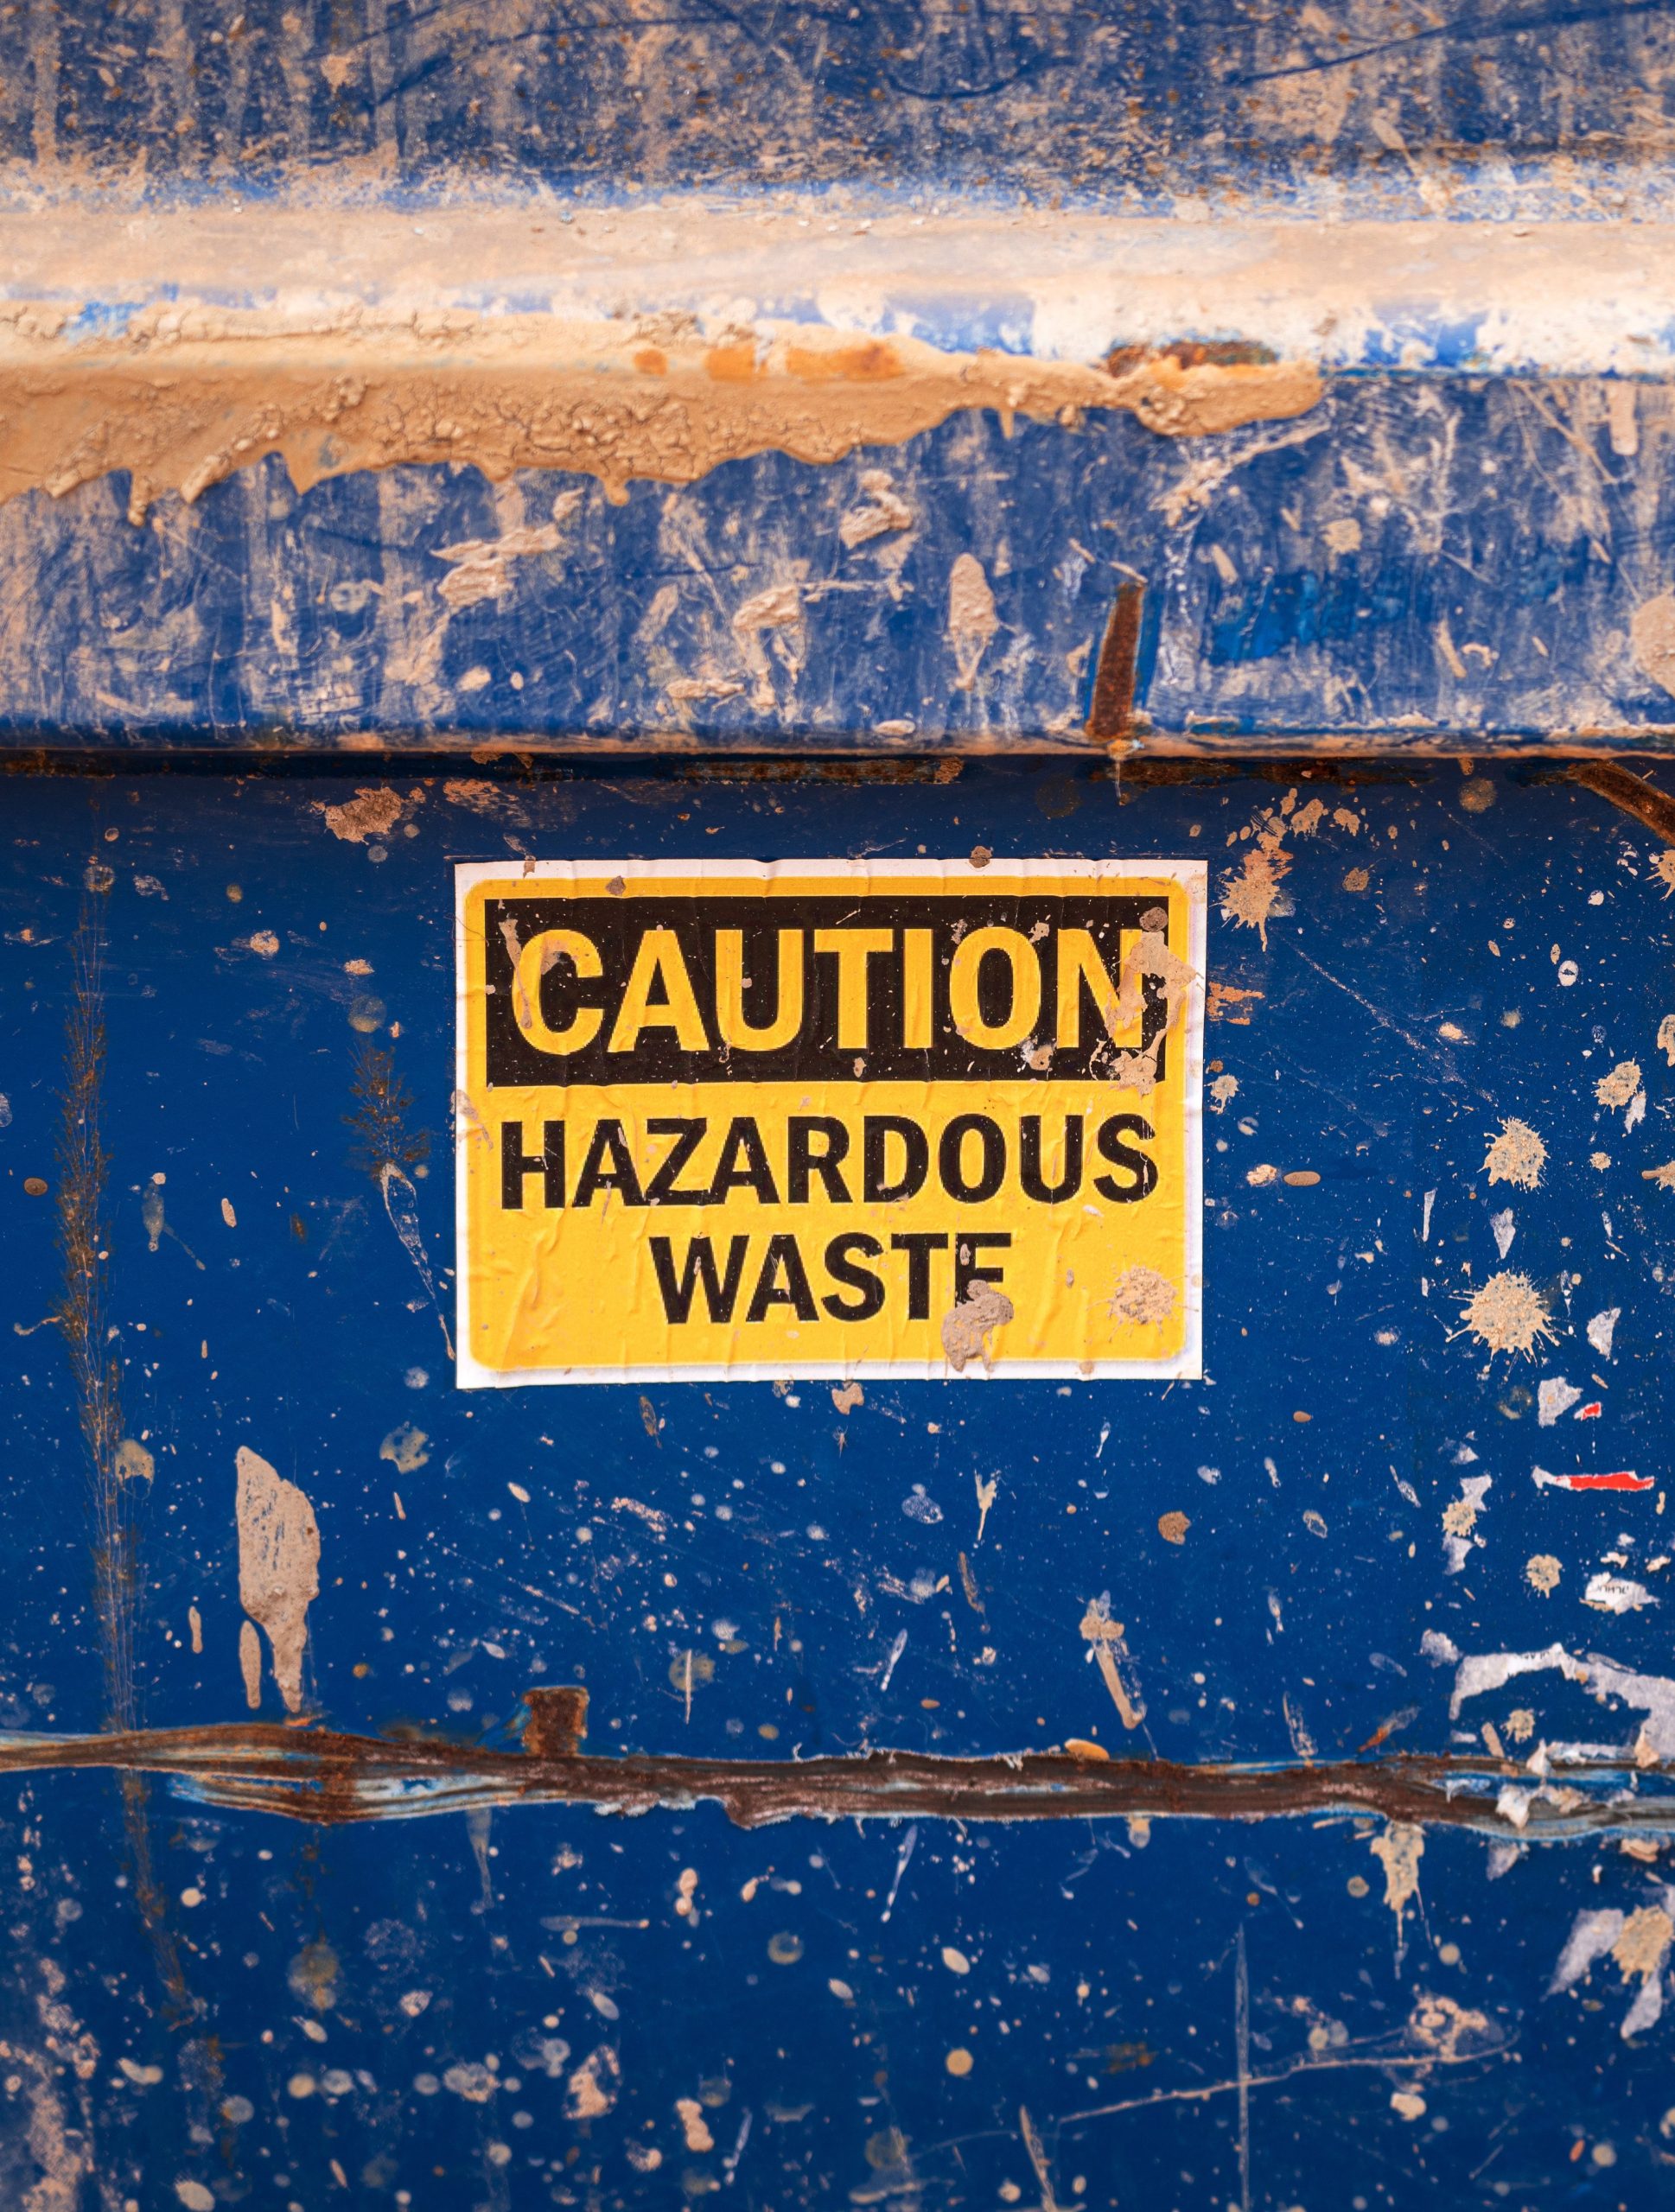 Hazardous waste caution label on storage bin